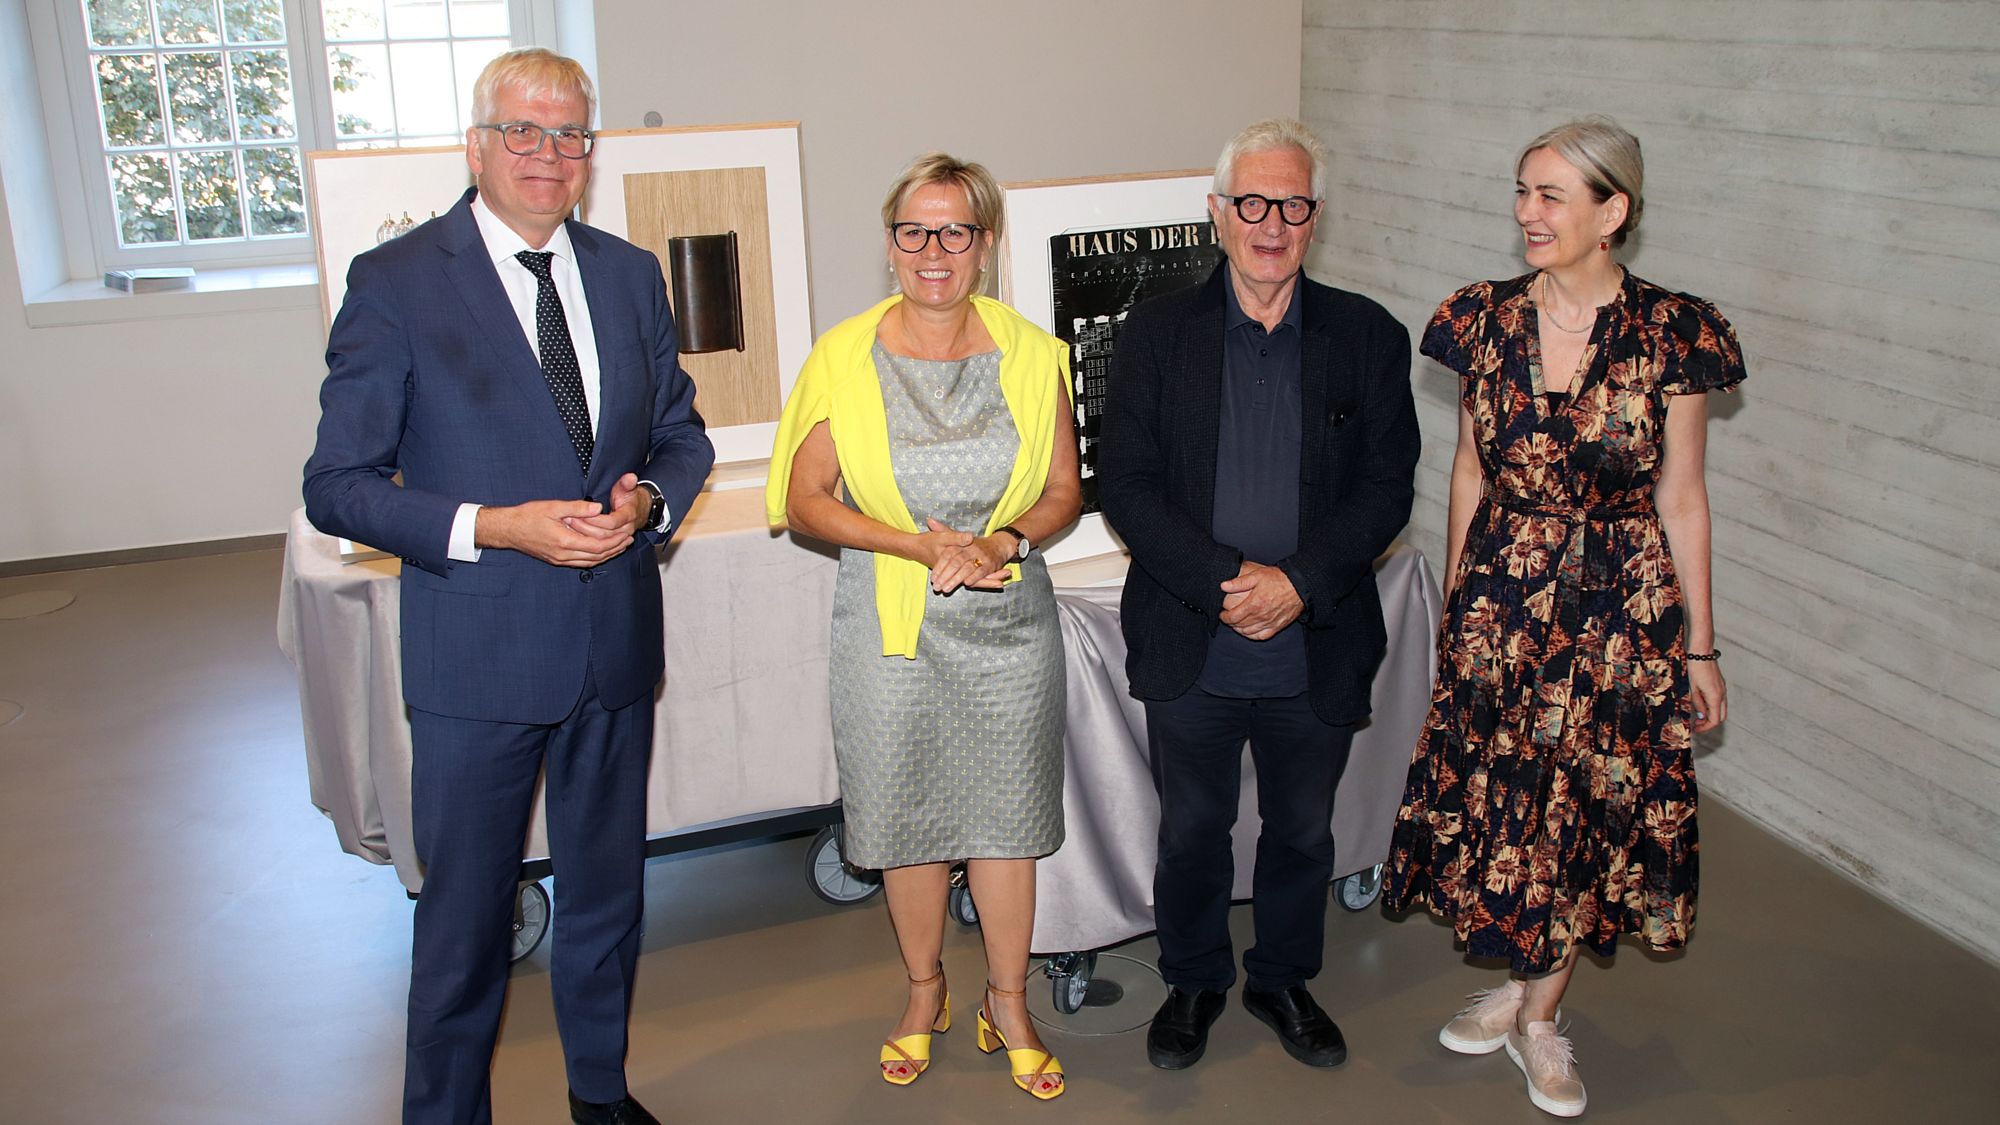 Finanzminister Vorjohann und Kulturministerin Klepsch übergaben die Räume für das Archiv von Egidio Marzona an Marion Ackermann (SKD)